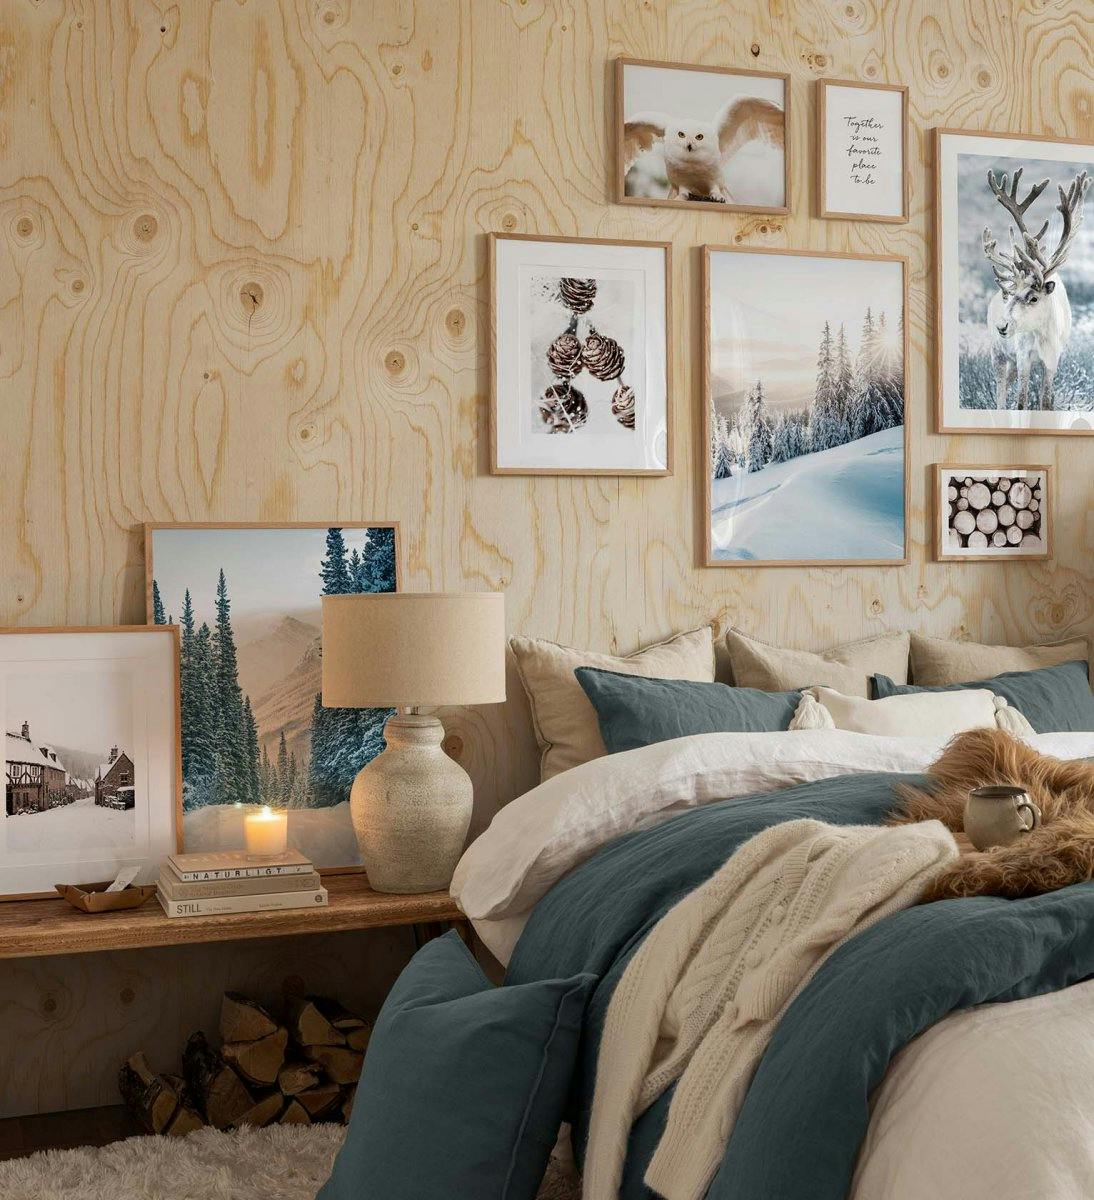 흰색, 갈색 및 녹색의 겨울 포스터가 있는 갤러리 벽과 침실용 오크 프레임이 있는 견적 인쇄